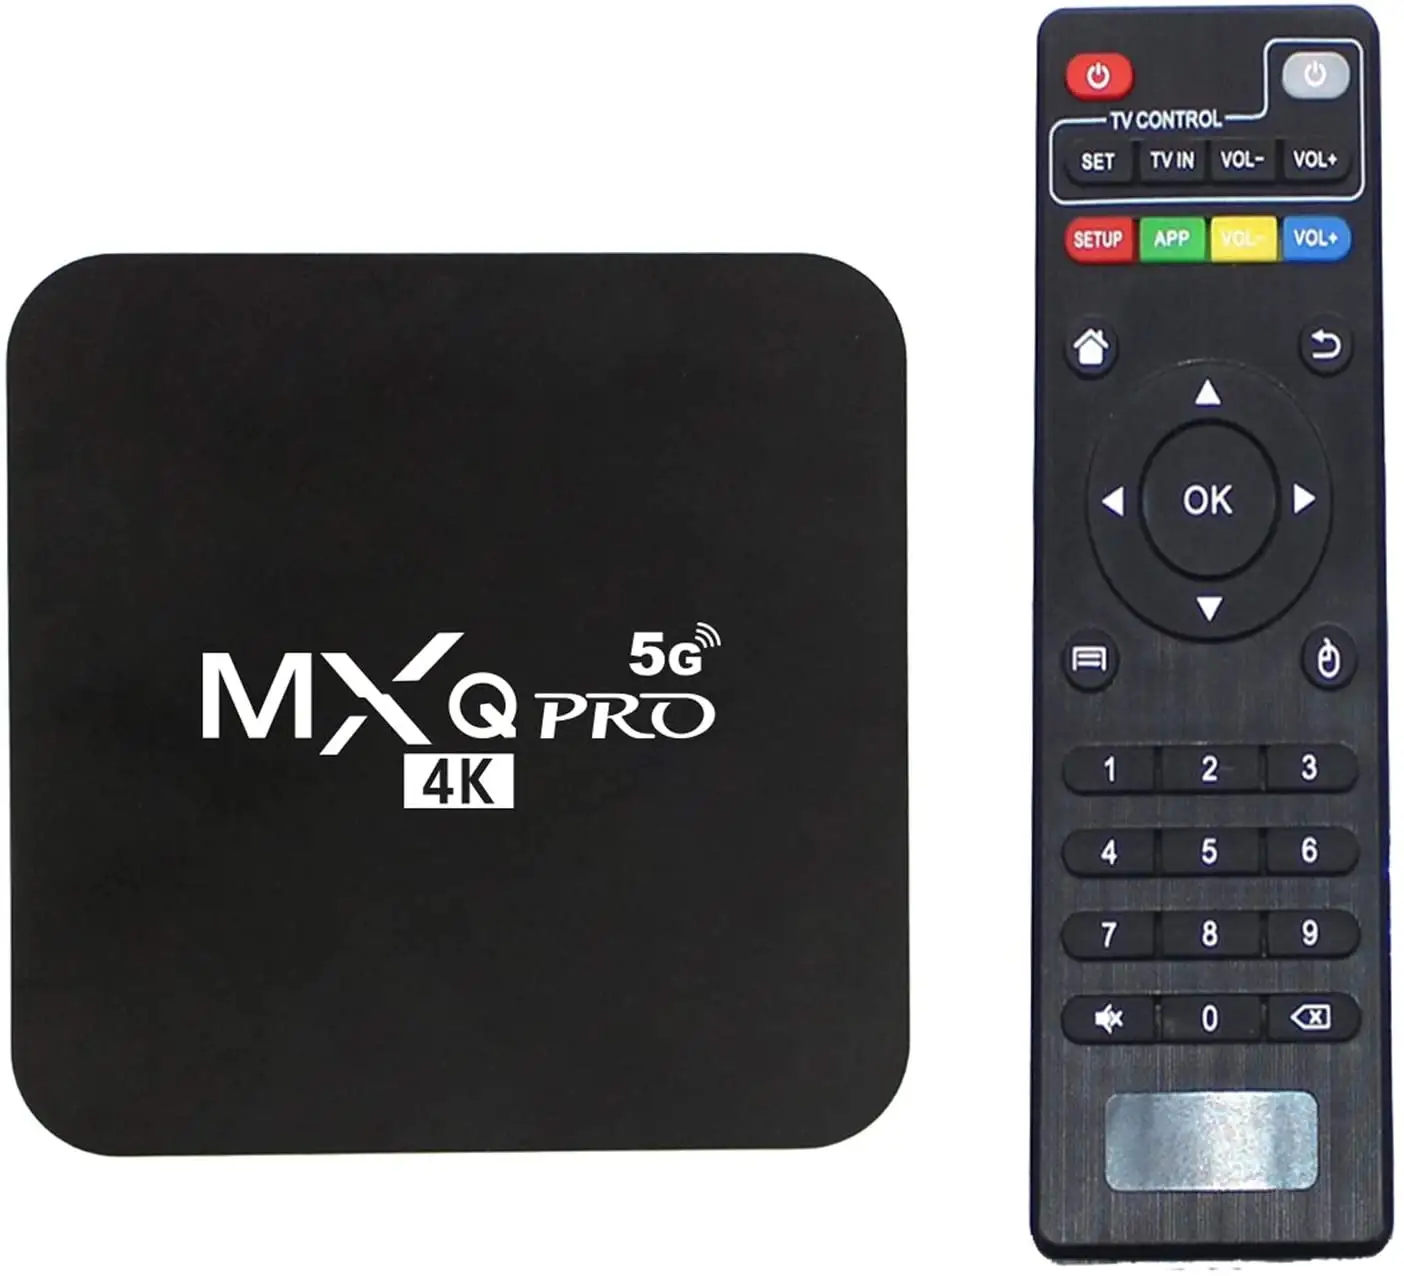 Decodificador de TV MXQ, versión RK3229-5G, 4K, con Control remoto en casa, PRO, Android, Wifi